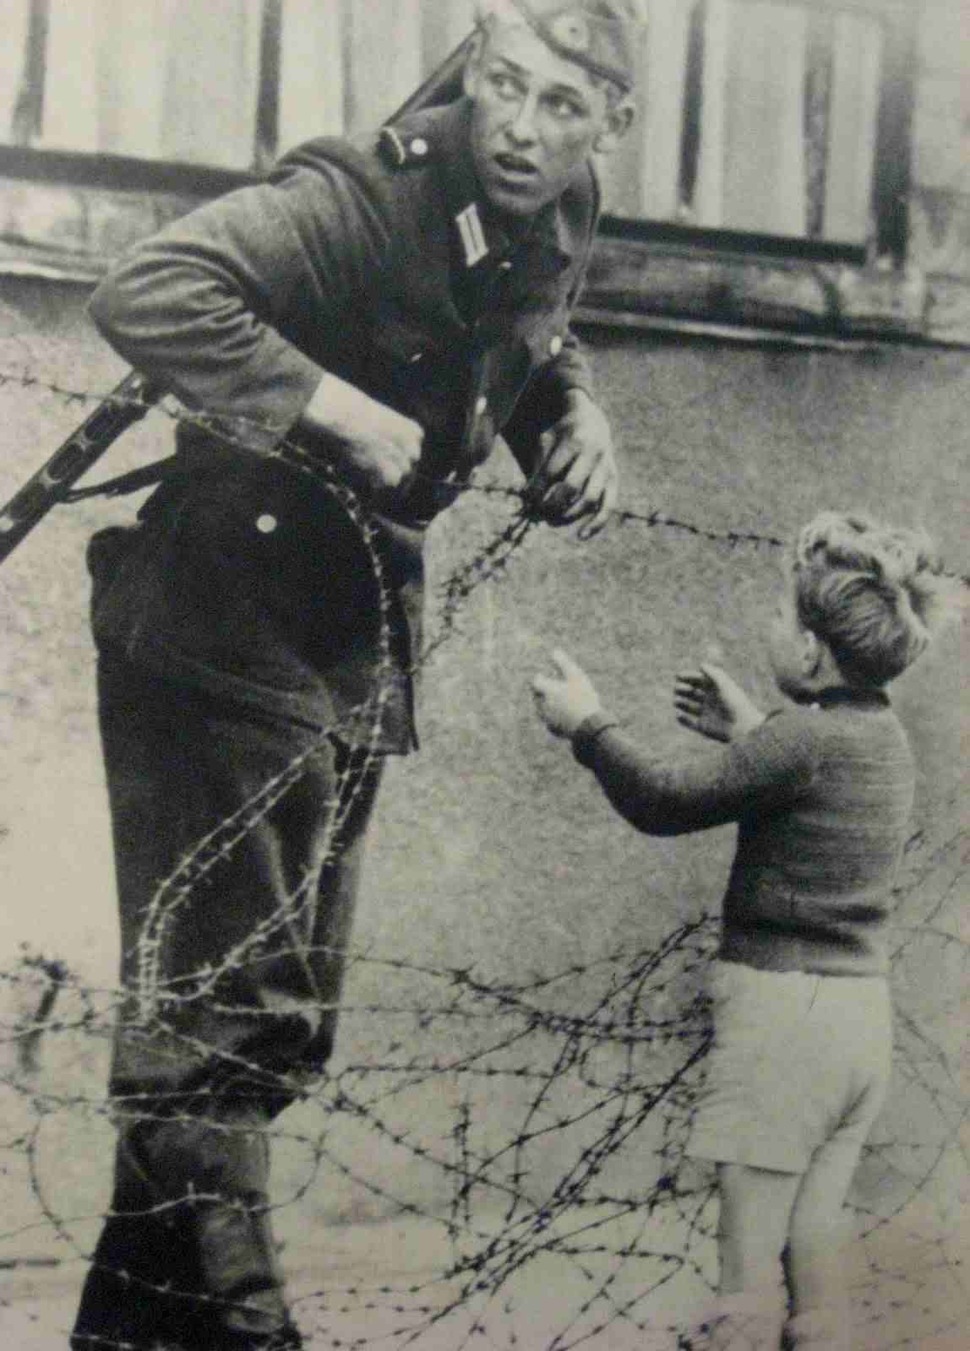 east german soldier helps a little boy sneak across the berlin wall